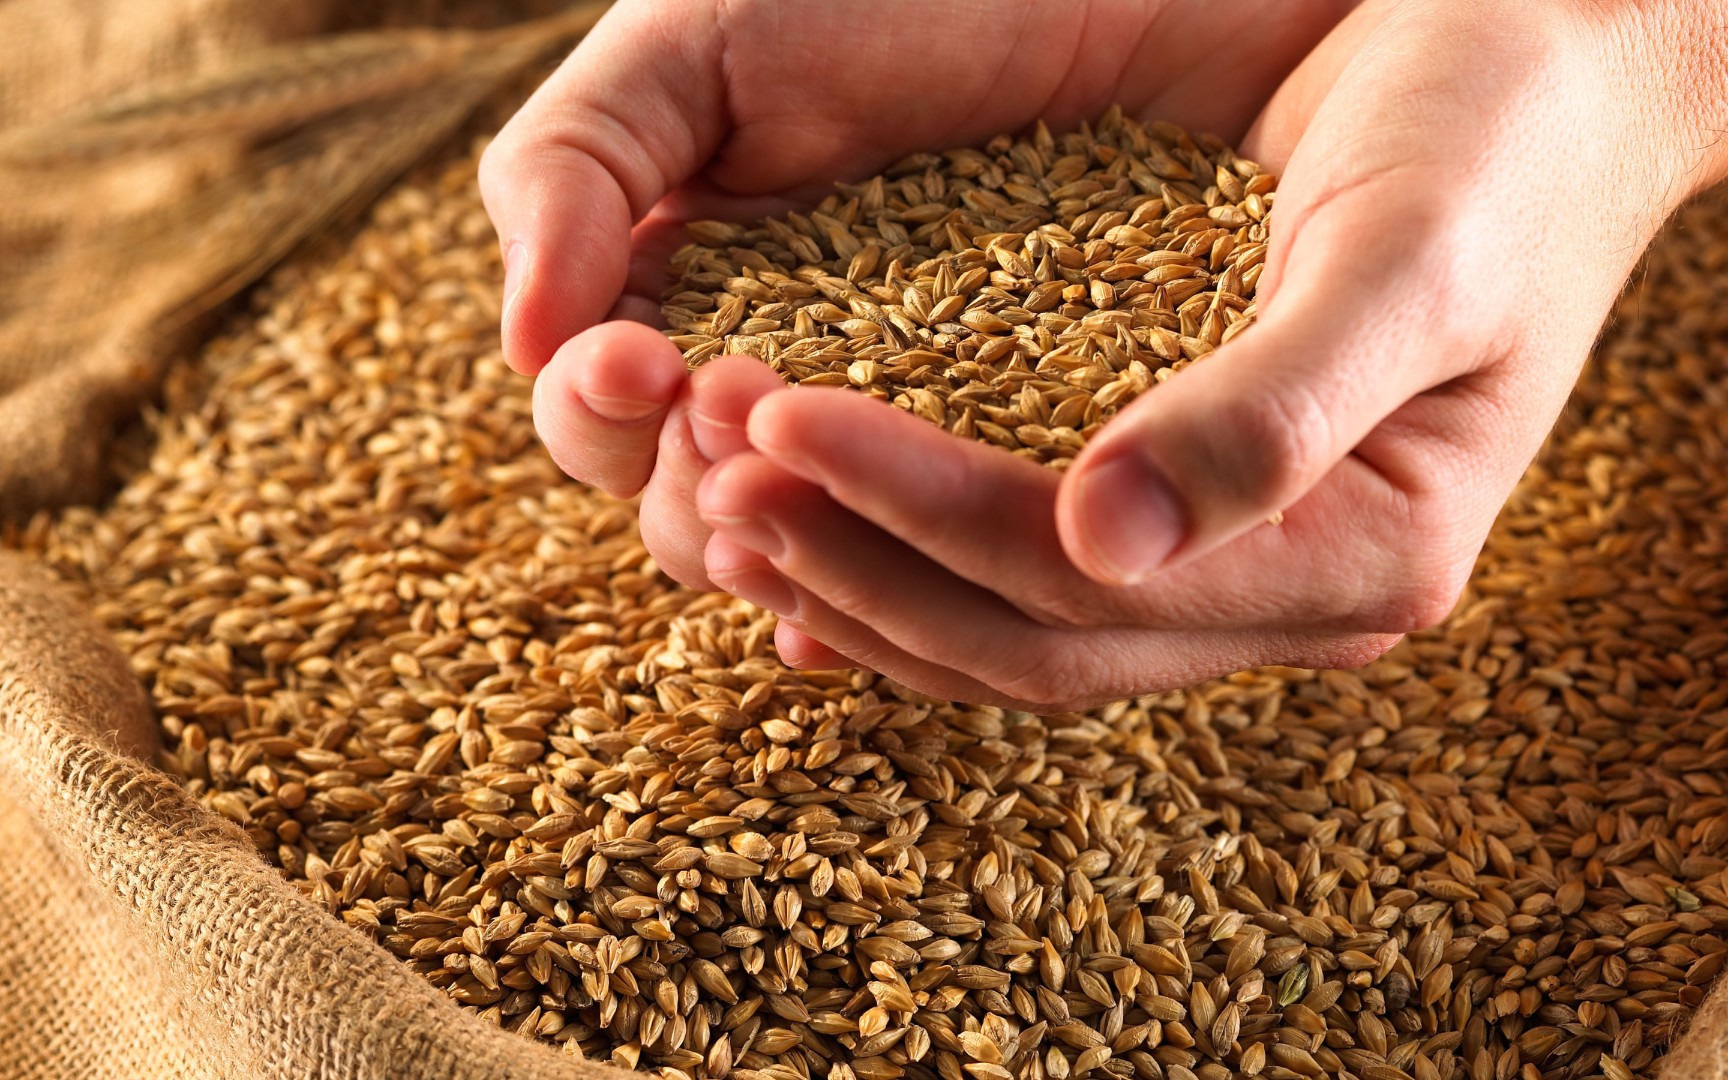 РФ не будет испытывать сложностей в экспорте зерна из-за введённого Турцией запрета на импорт пшеницы - Минсельхоз